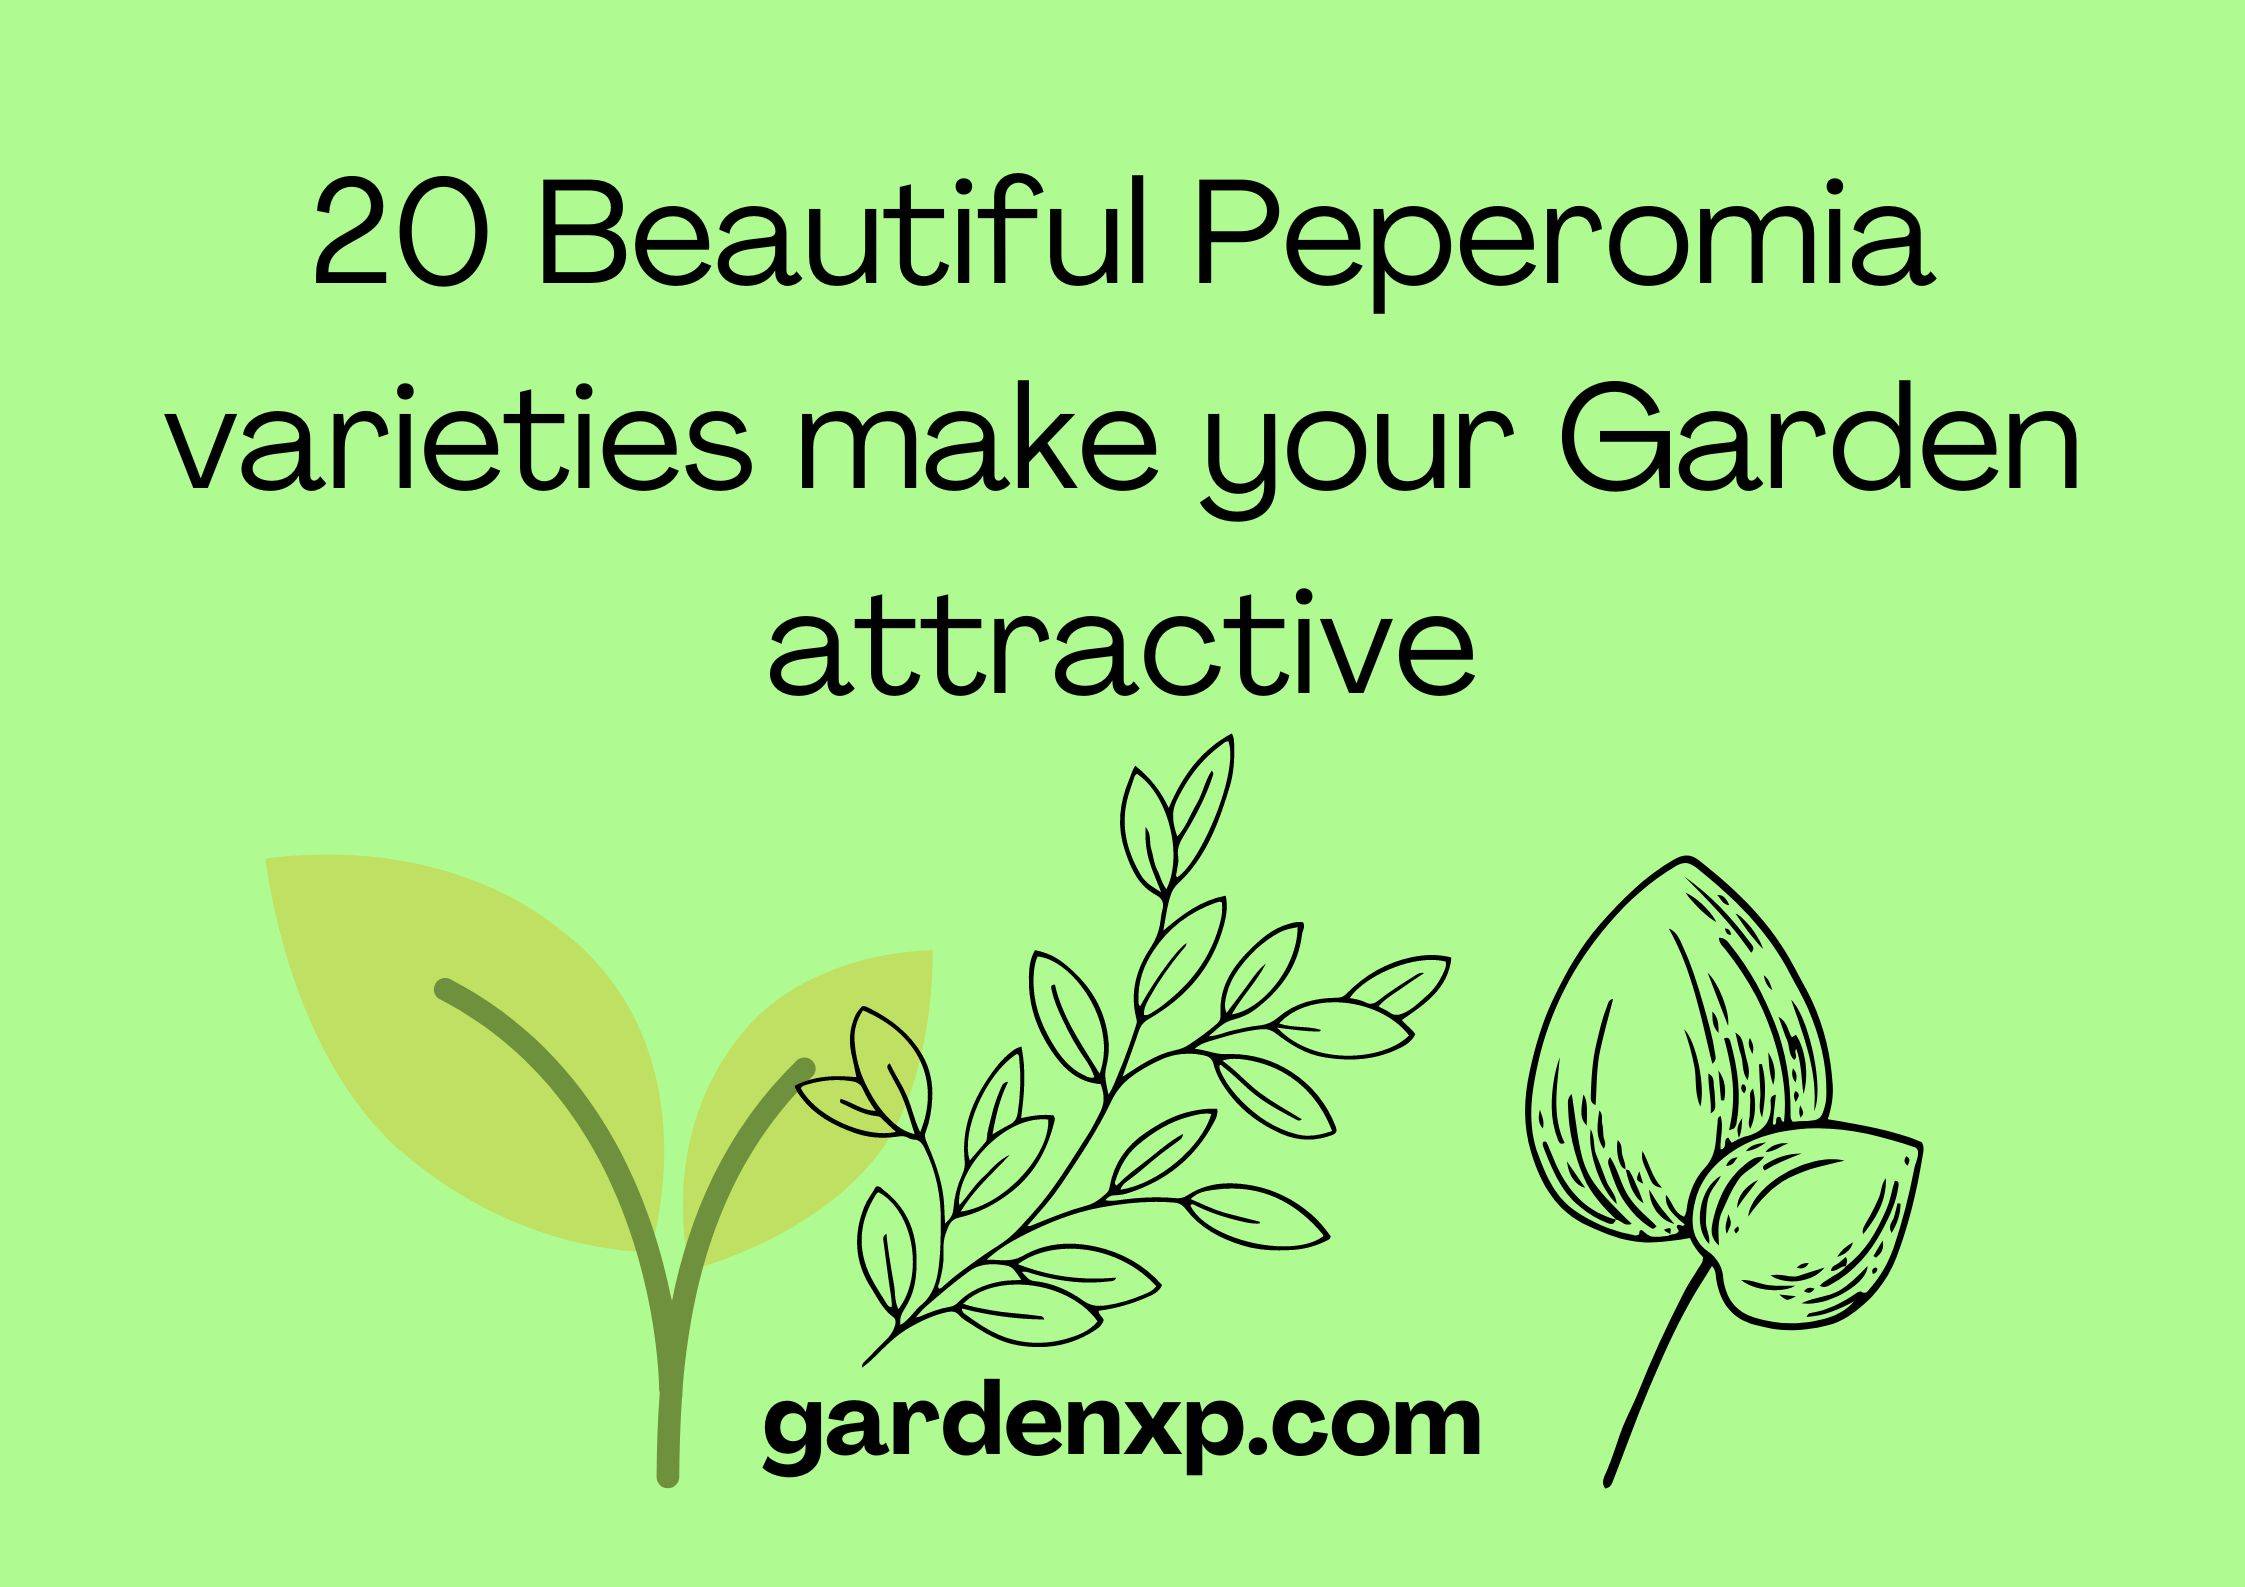 20 Beautiful Peperomia varieties that make your Garden attractive